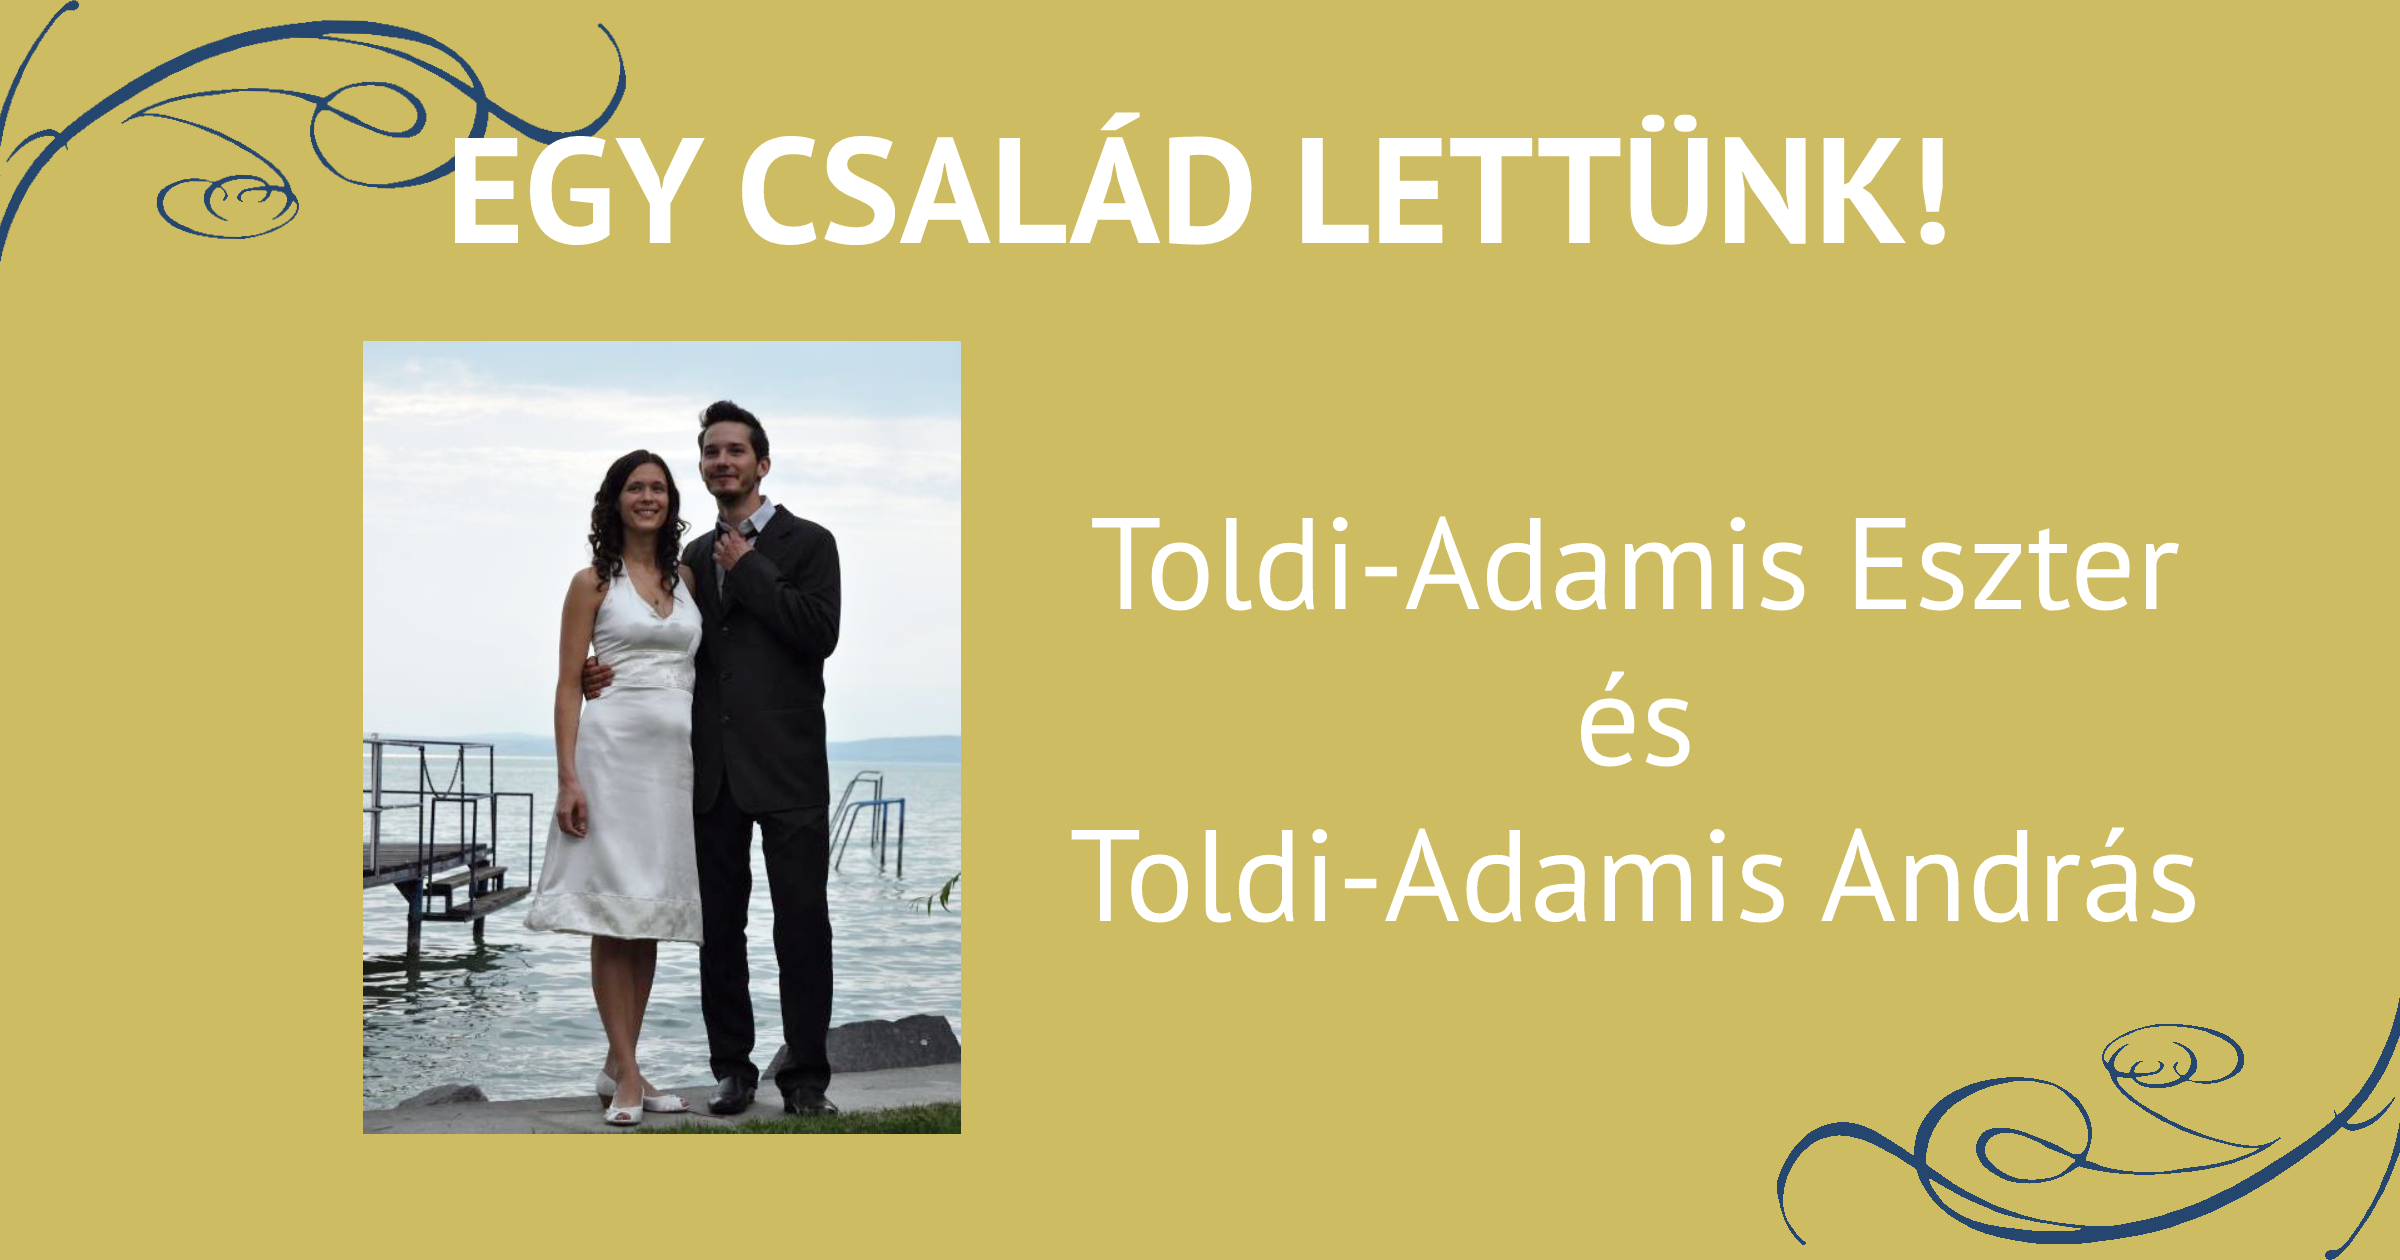 Egy család lettünk! - beszélgetés Toldi-Adamis Eszterrel és Toldi-Adamis Andrással